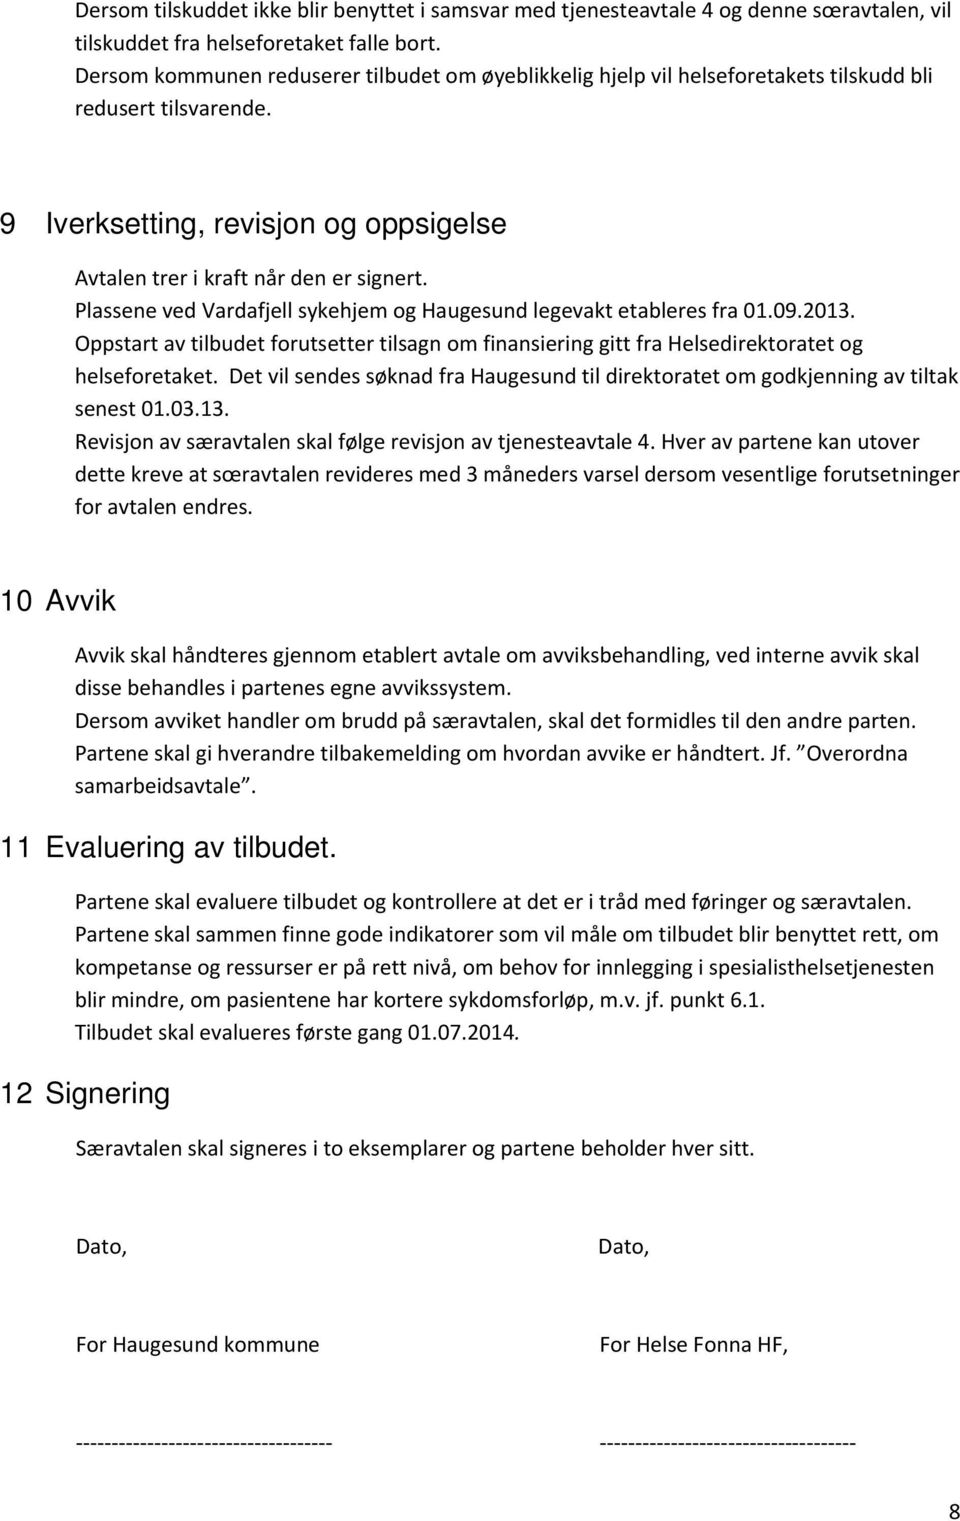 Plassene ved Vardafjell sykehjem og Haugesund legevakt etableres fra 01.09.2013. Oppstart av tilbudet forutsetter tilsagn om finansiering gitt fra Helsedirektoratet og helseforetaket.